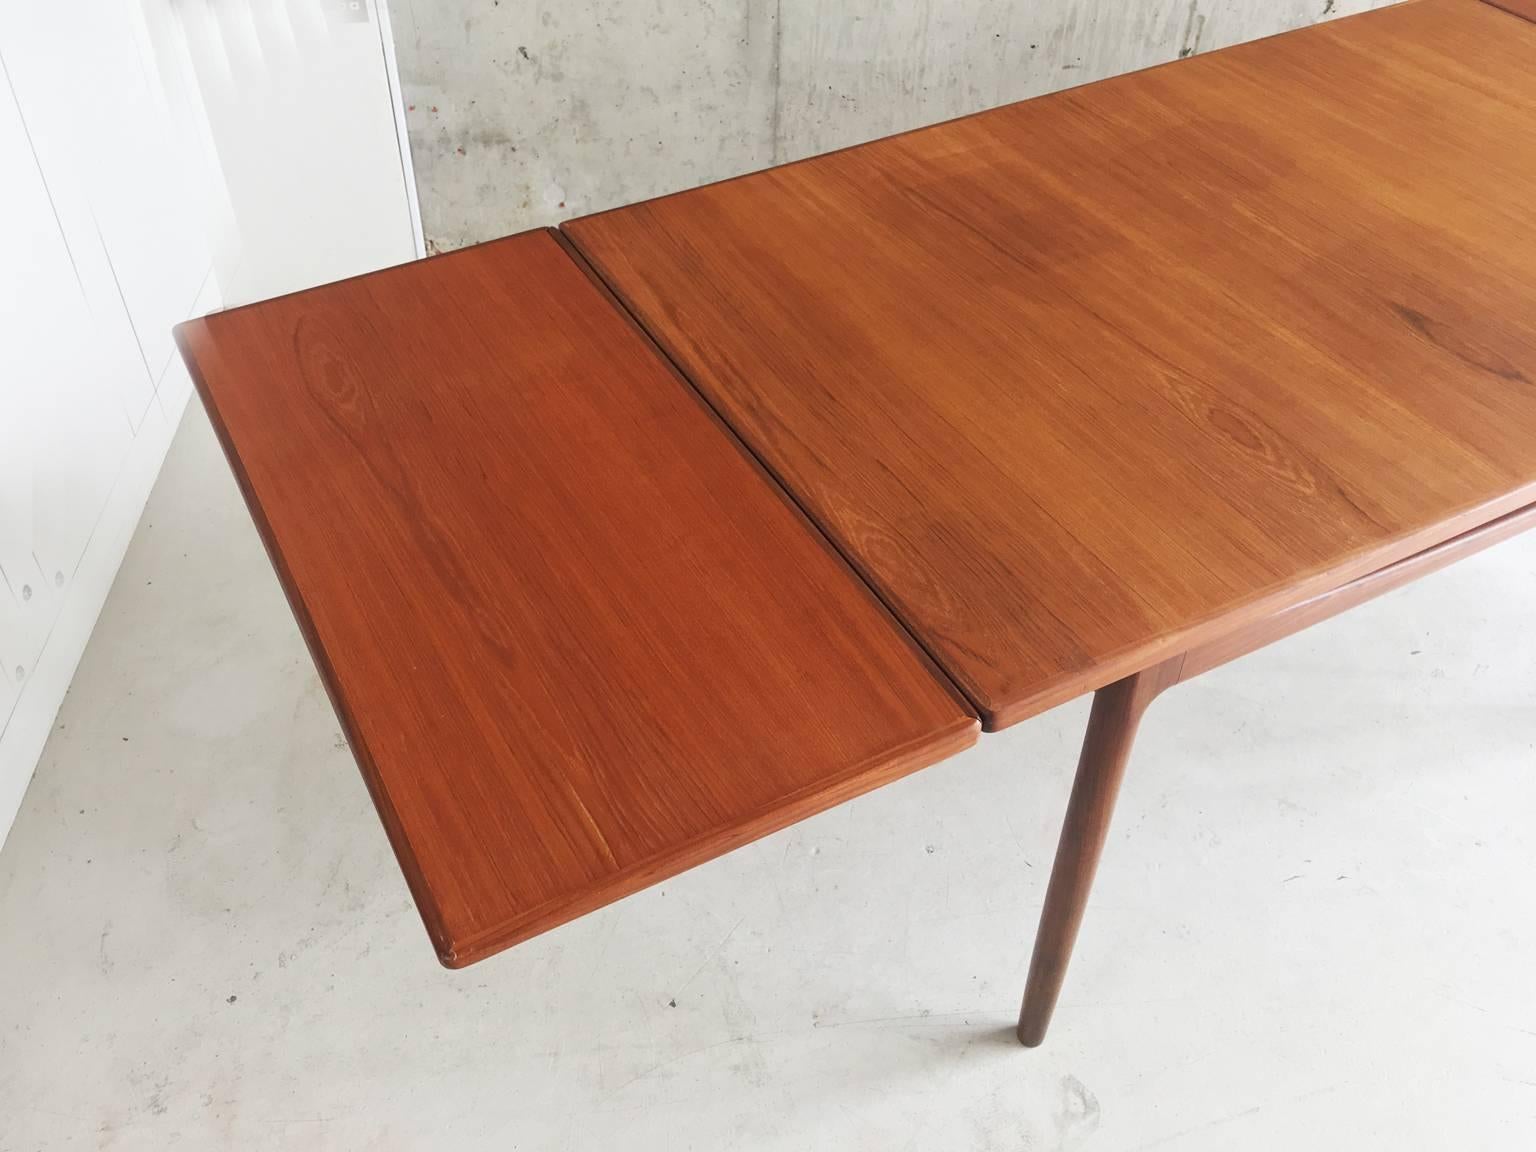 Ib Kofod-Larsen for G-Plan’s Danish Range 1960s Teak Extendable Dining Table For Sale 2